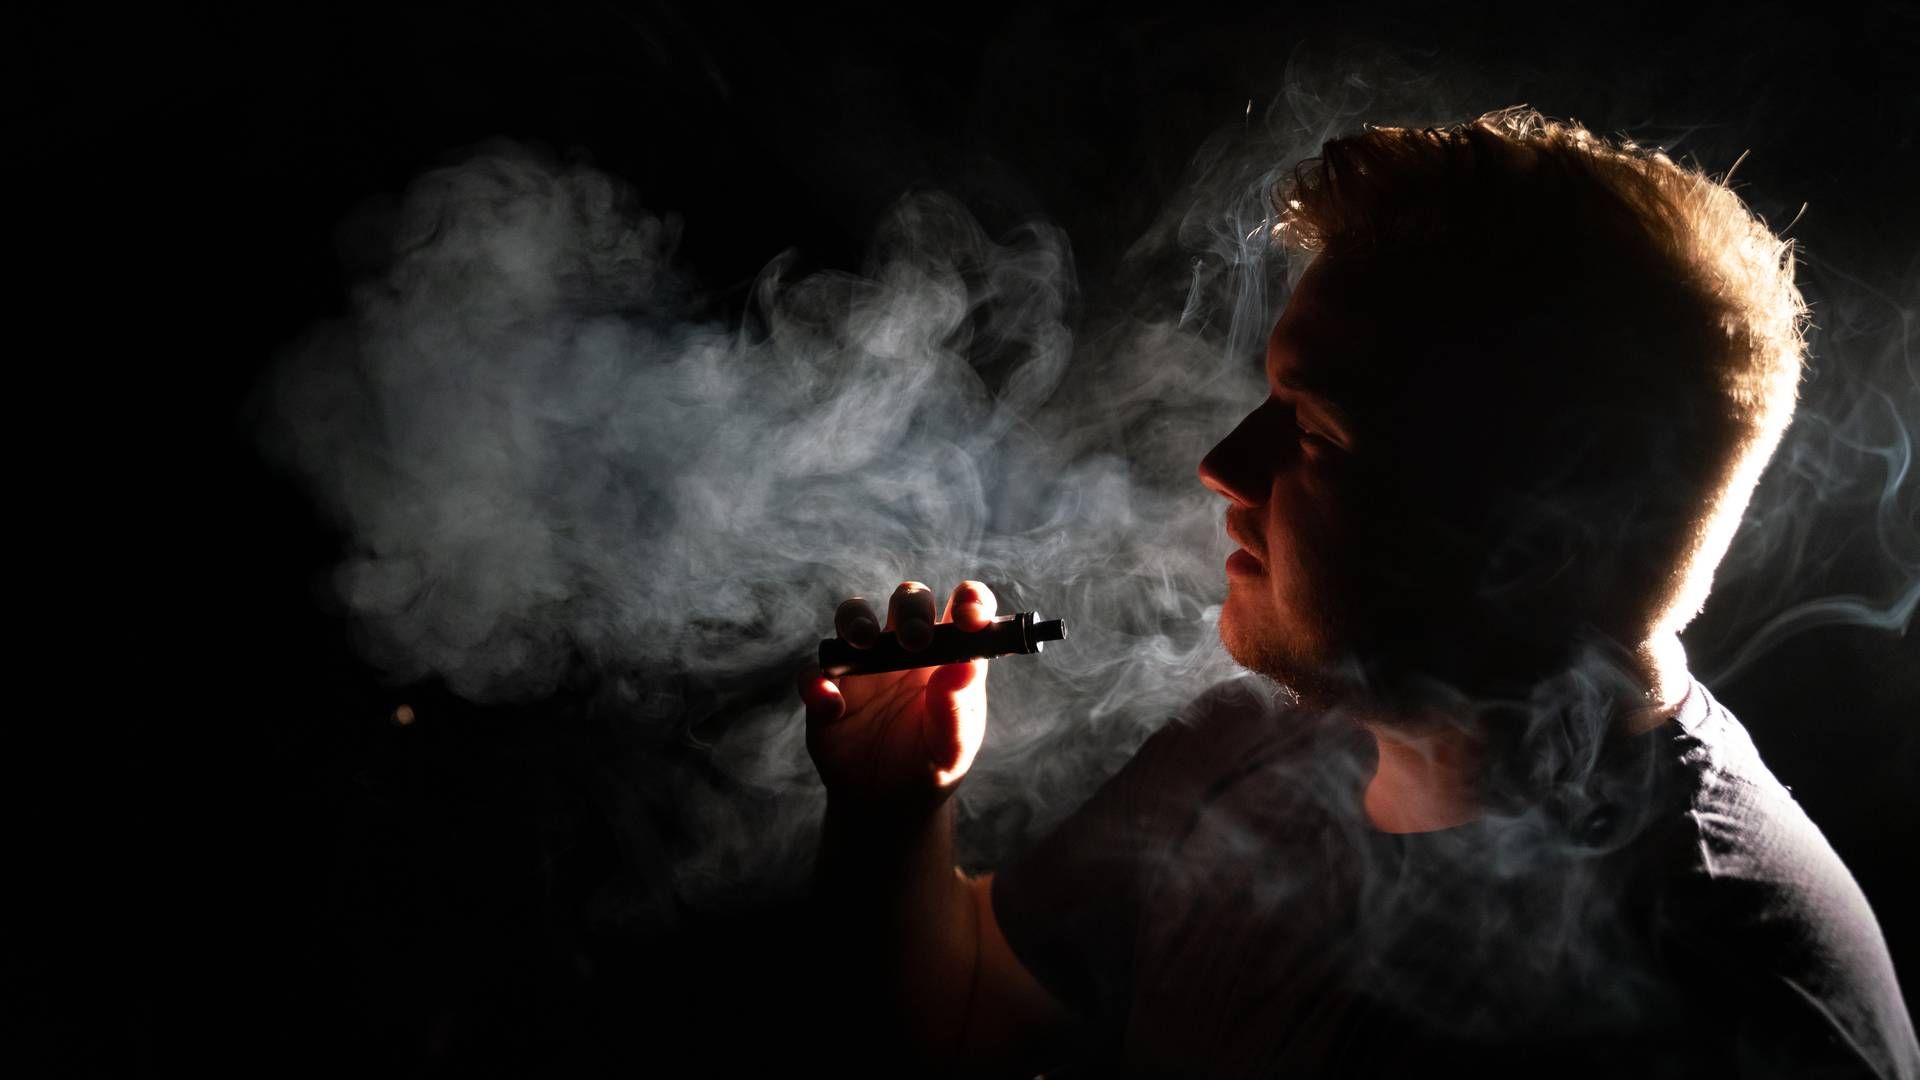 Fra 1. april er det ikke længere lovligt at sælge e-cigaretter med smag. Det betyder et noget mere begrænset sortiment for Gejser. | Foto: Andreas Merrald